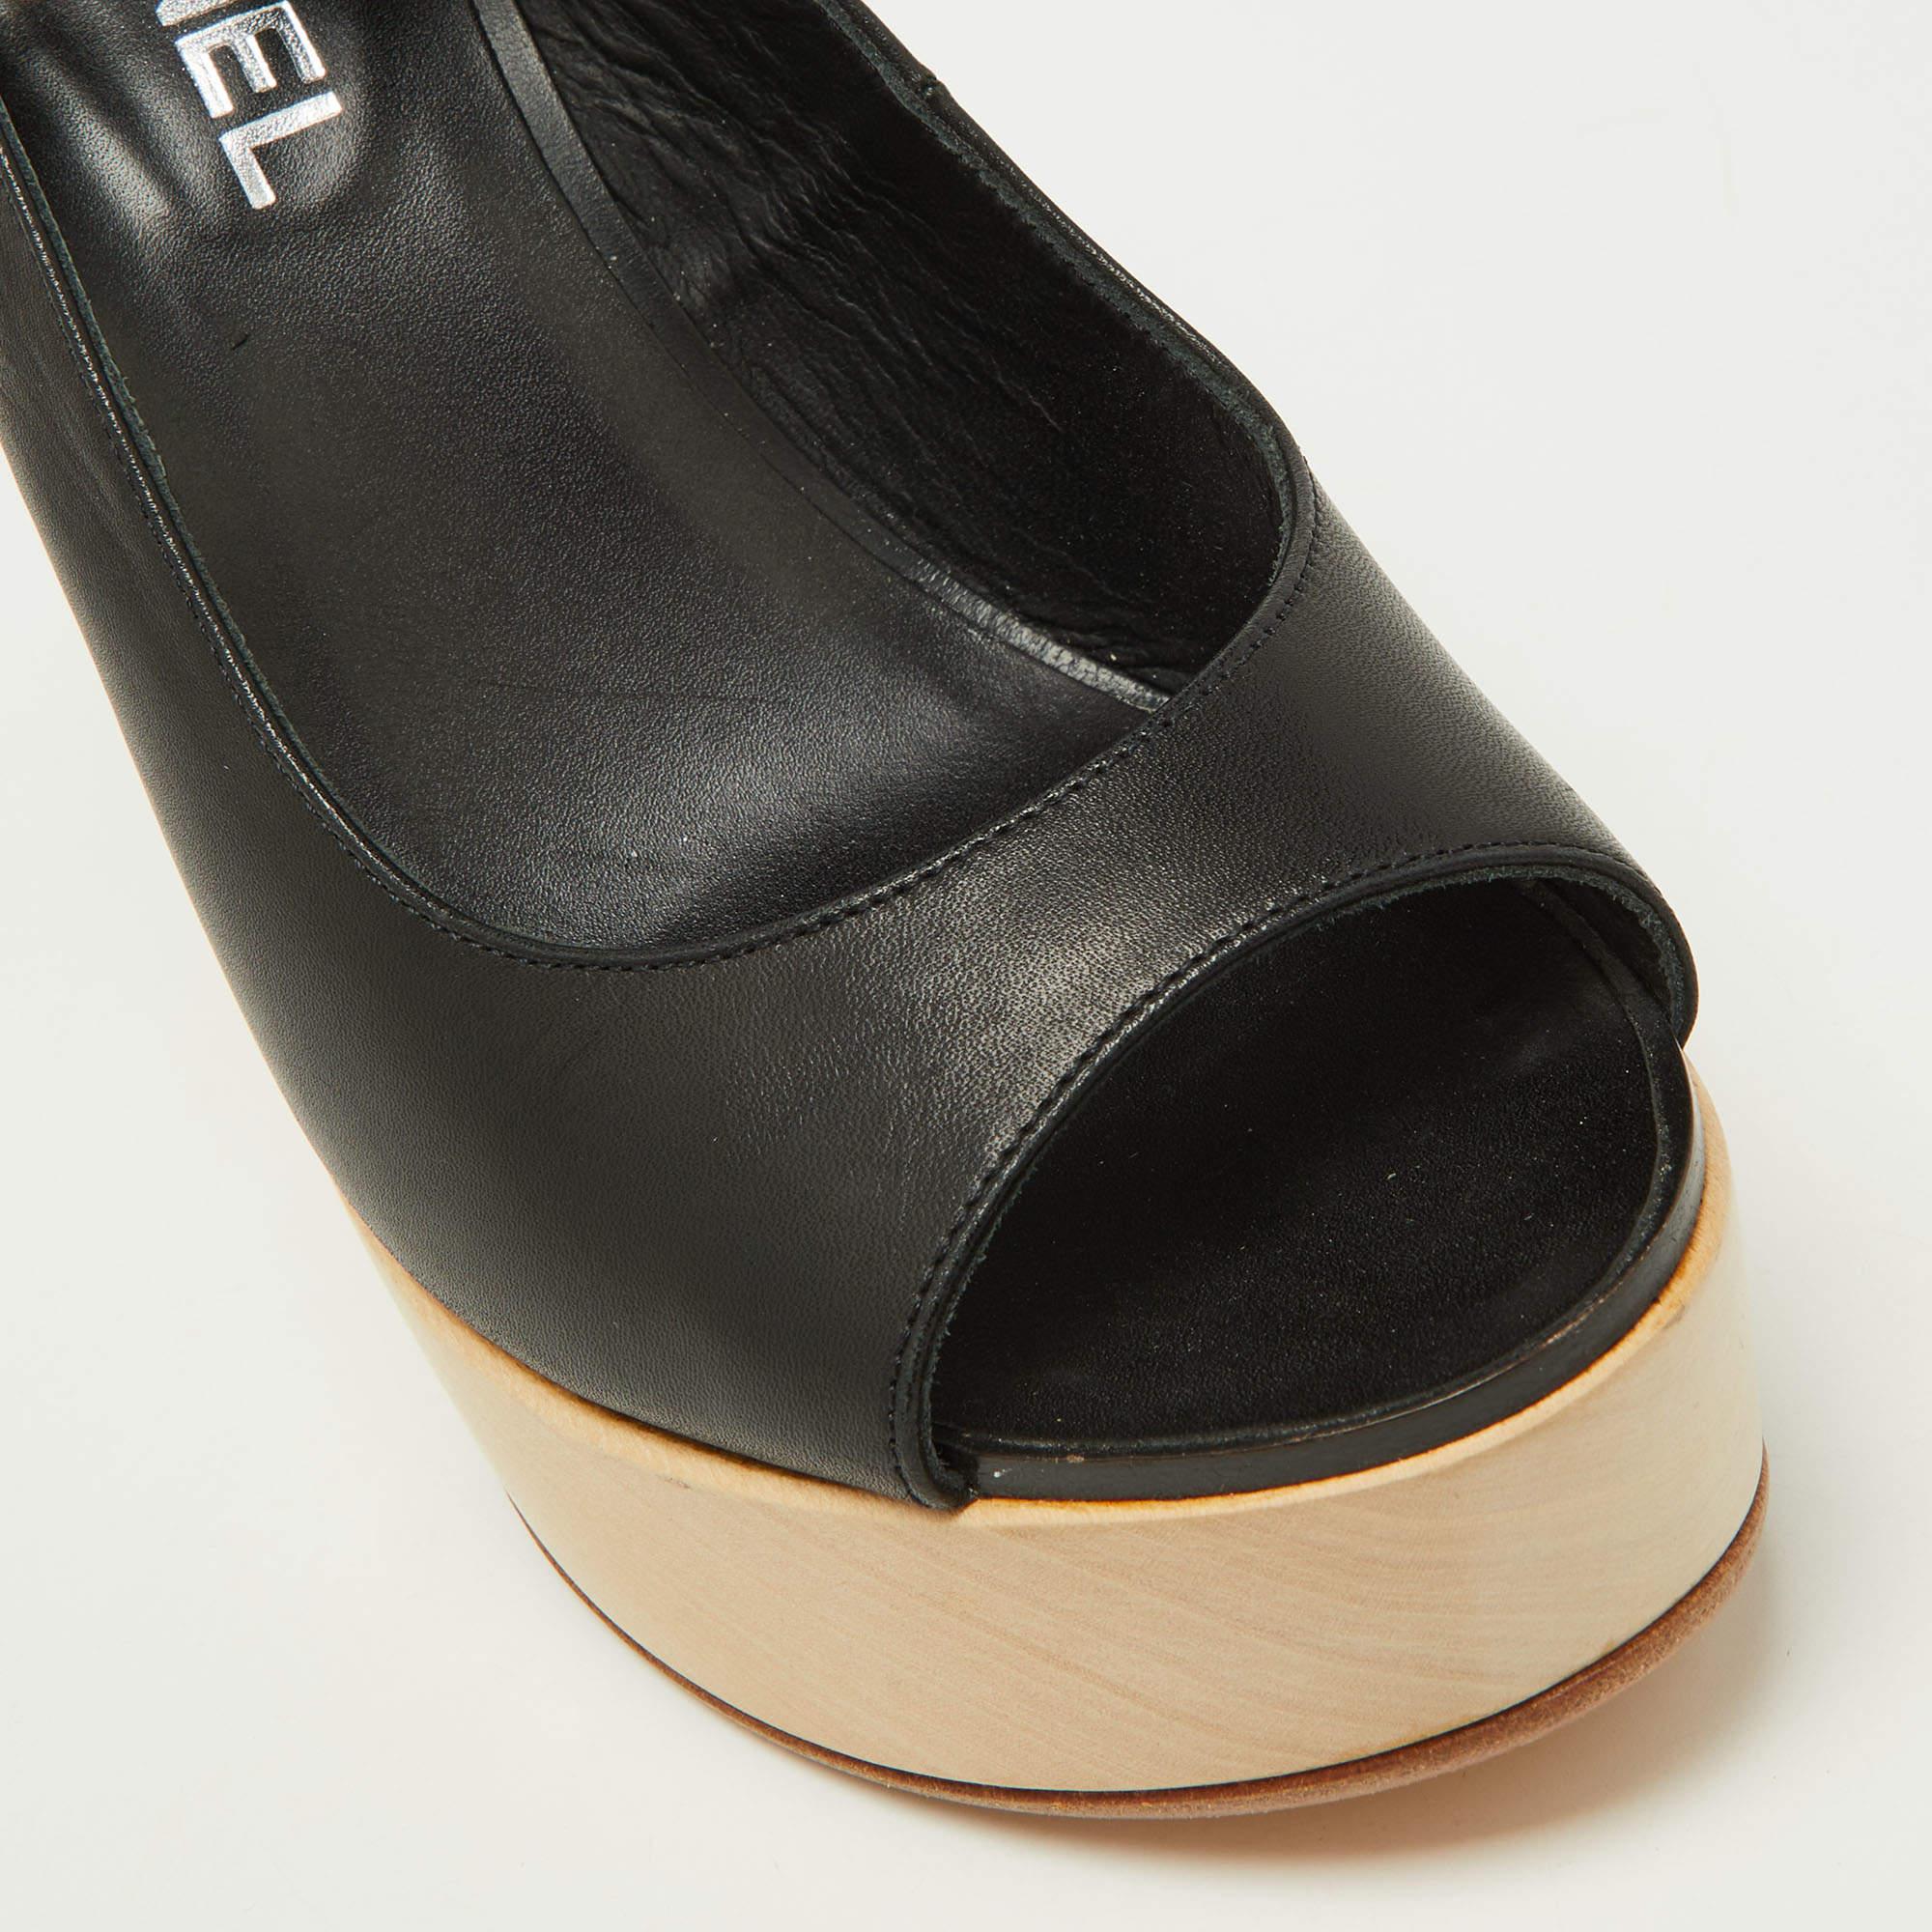 Chanel Black Leather Wooden Block Heel Slingback Platform Pumps Size 39 4